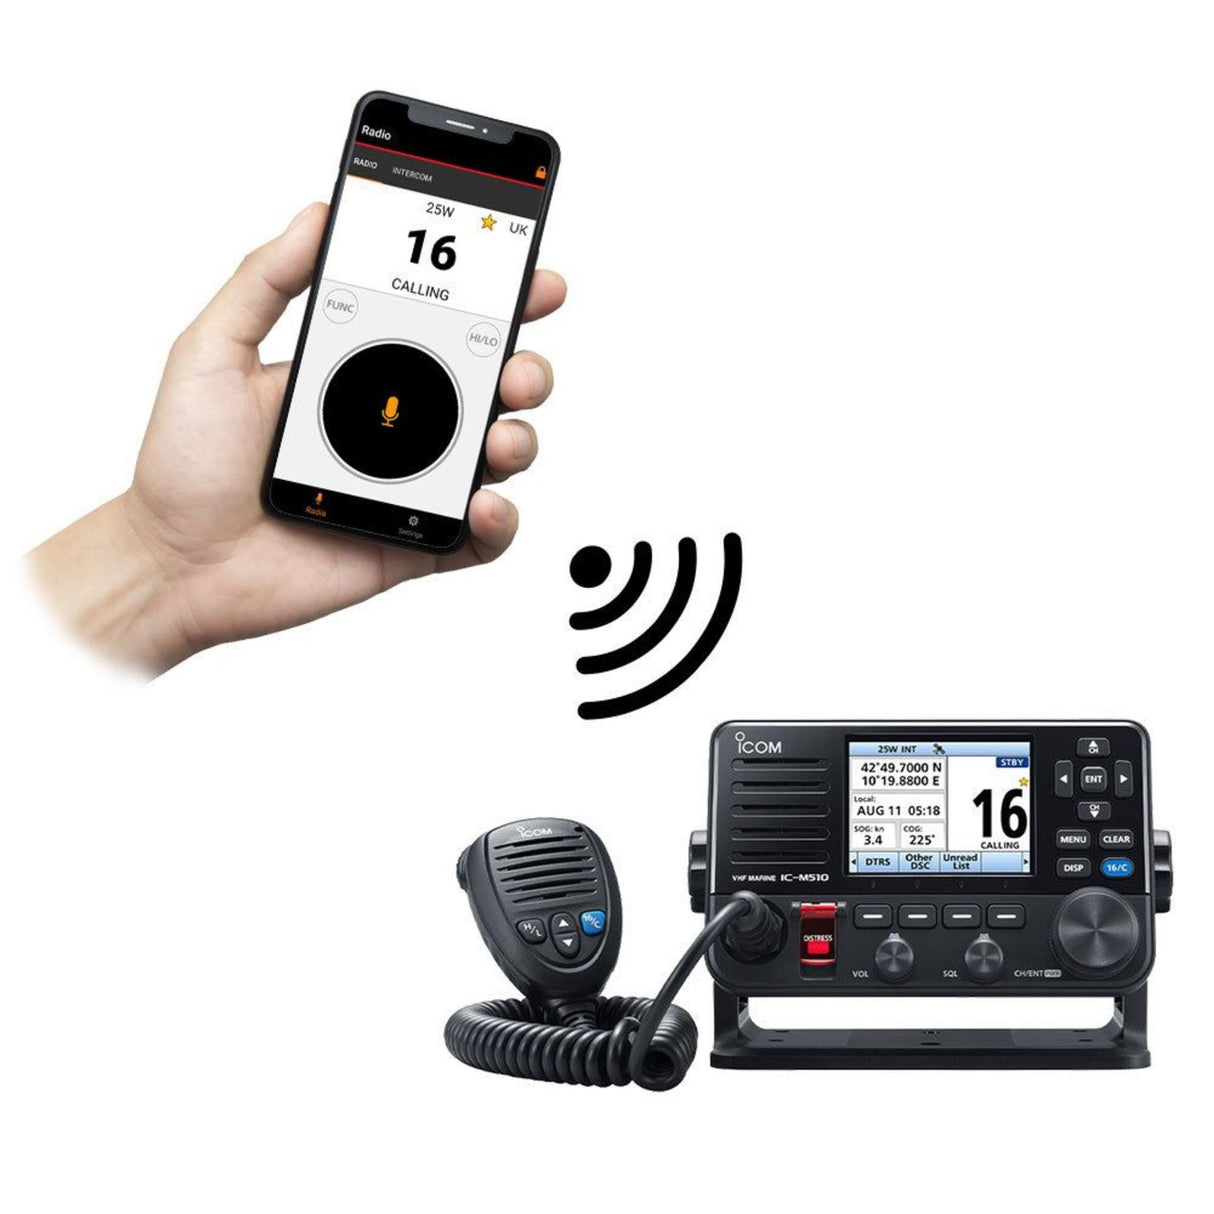 Icom IC-M510-AIS  VHF DSC Radio with AIS Receiver & Smartphone Control